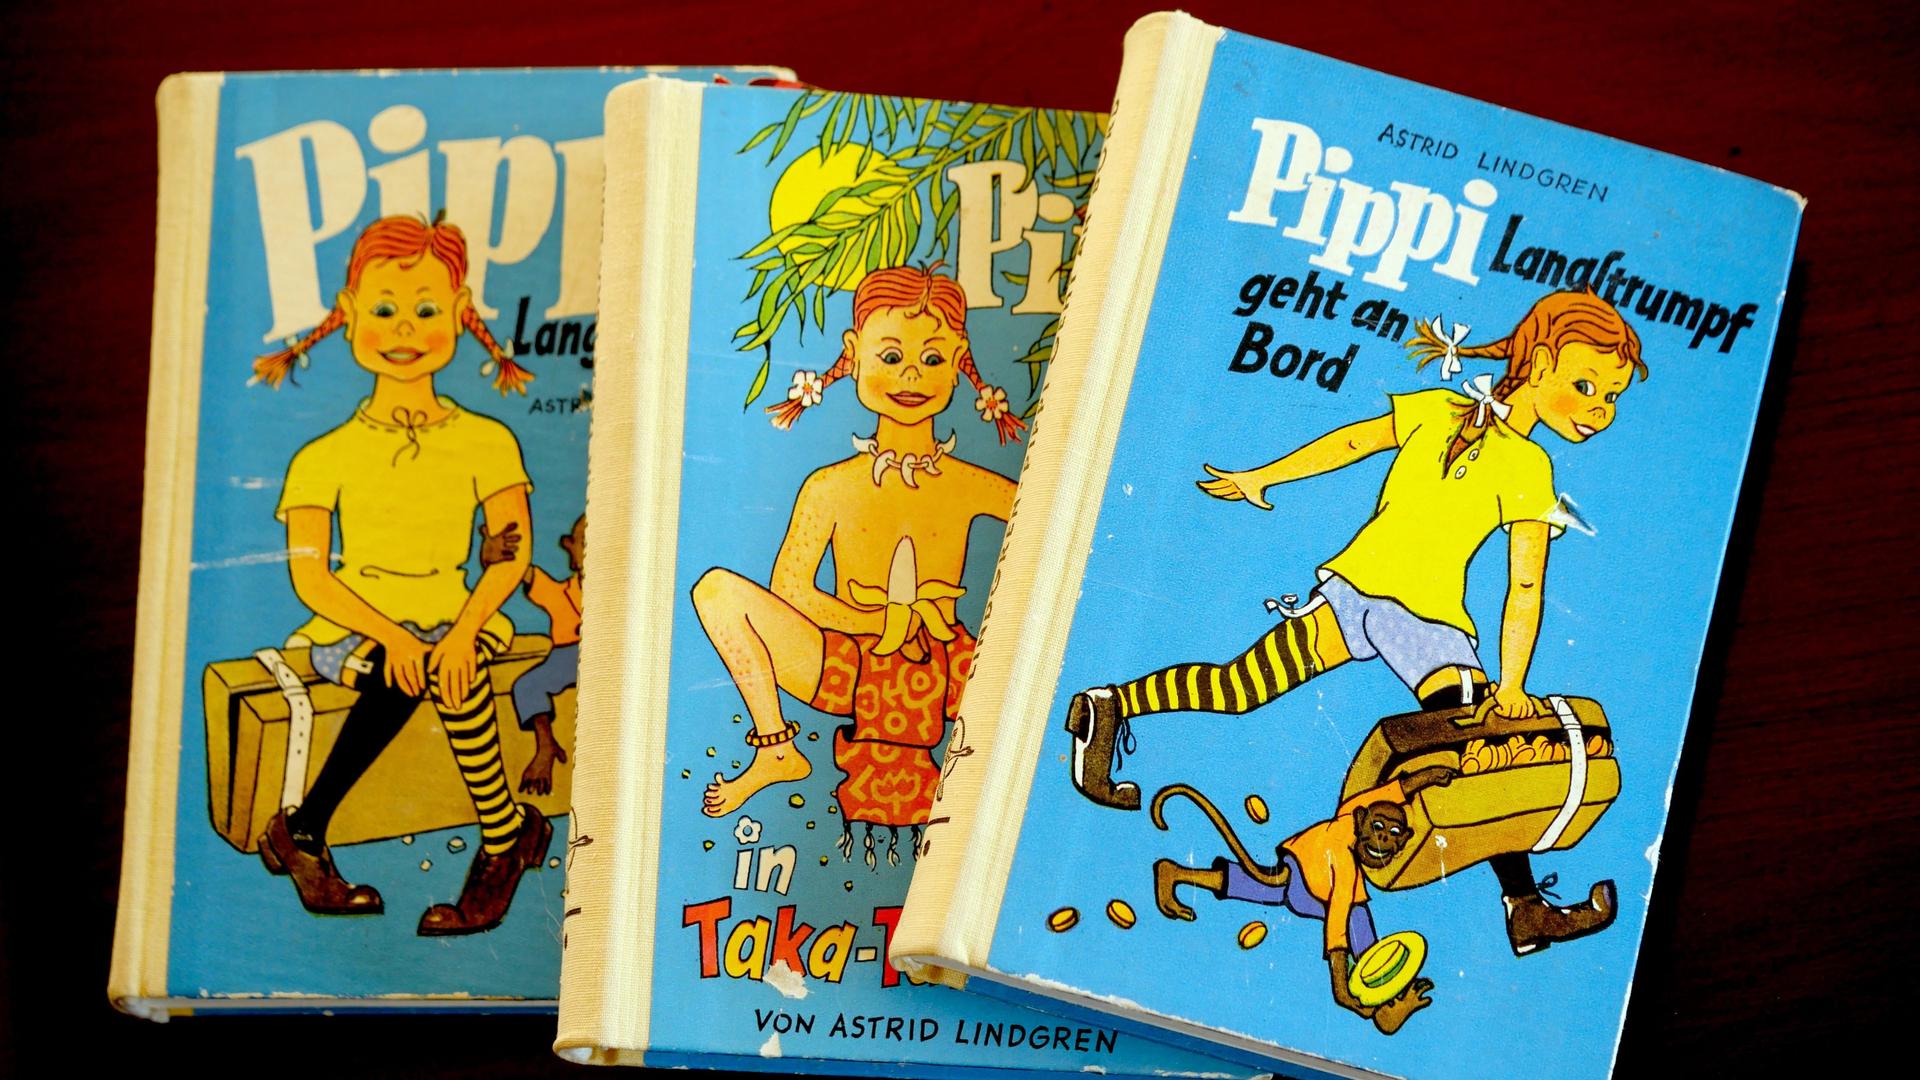 Die "Pippi Langstrumpf" Bücher aus den Jahren 1960-1962 von Astrid Lindgren.